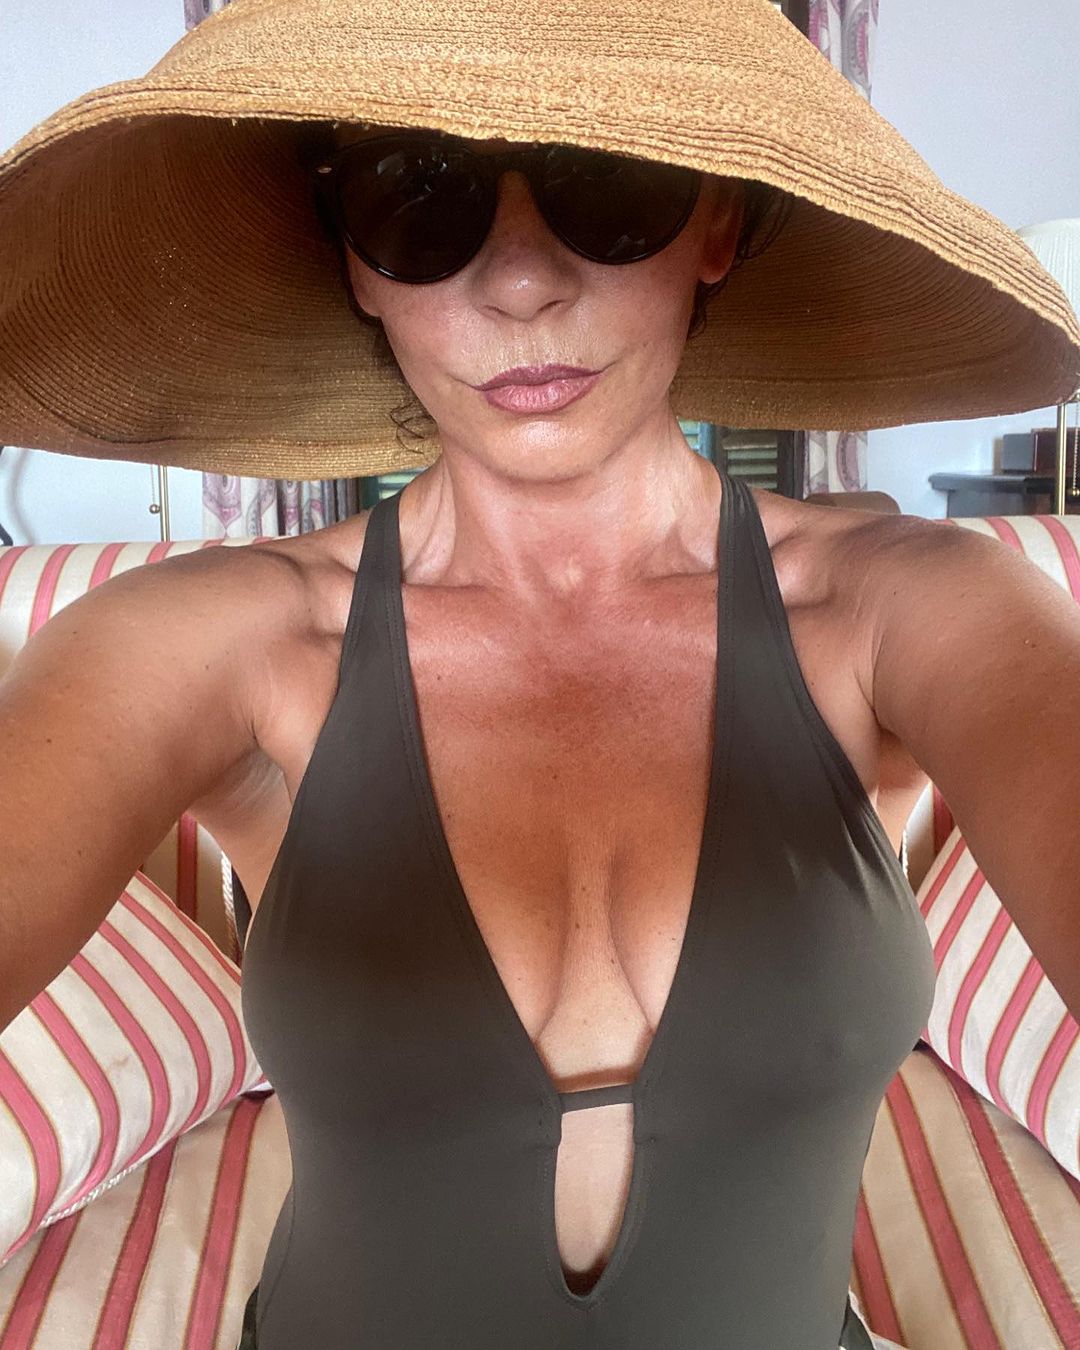 Catherine Zeta Jones Selfies in Her Swimsuit! - Photo 1